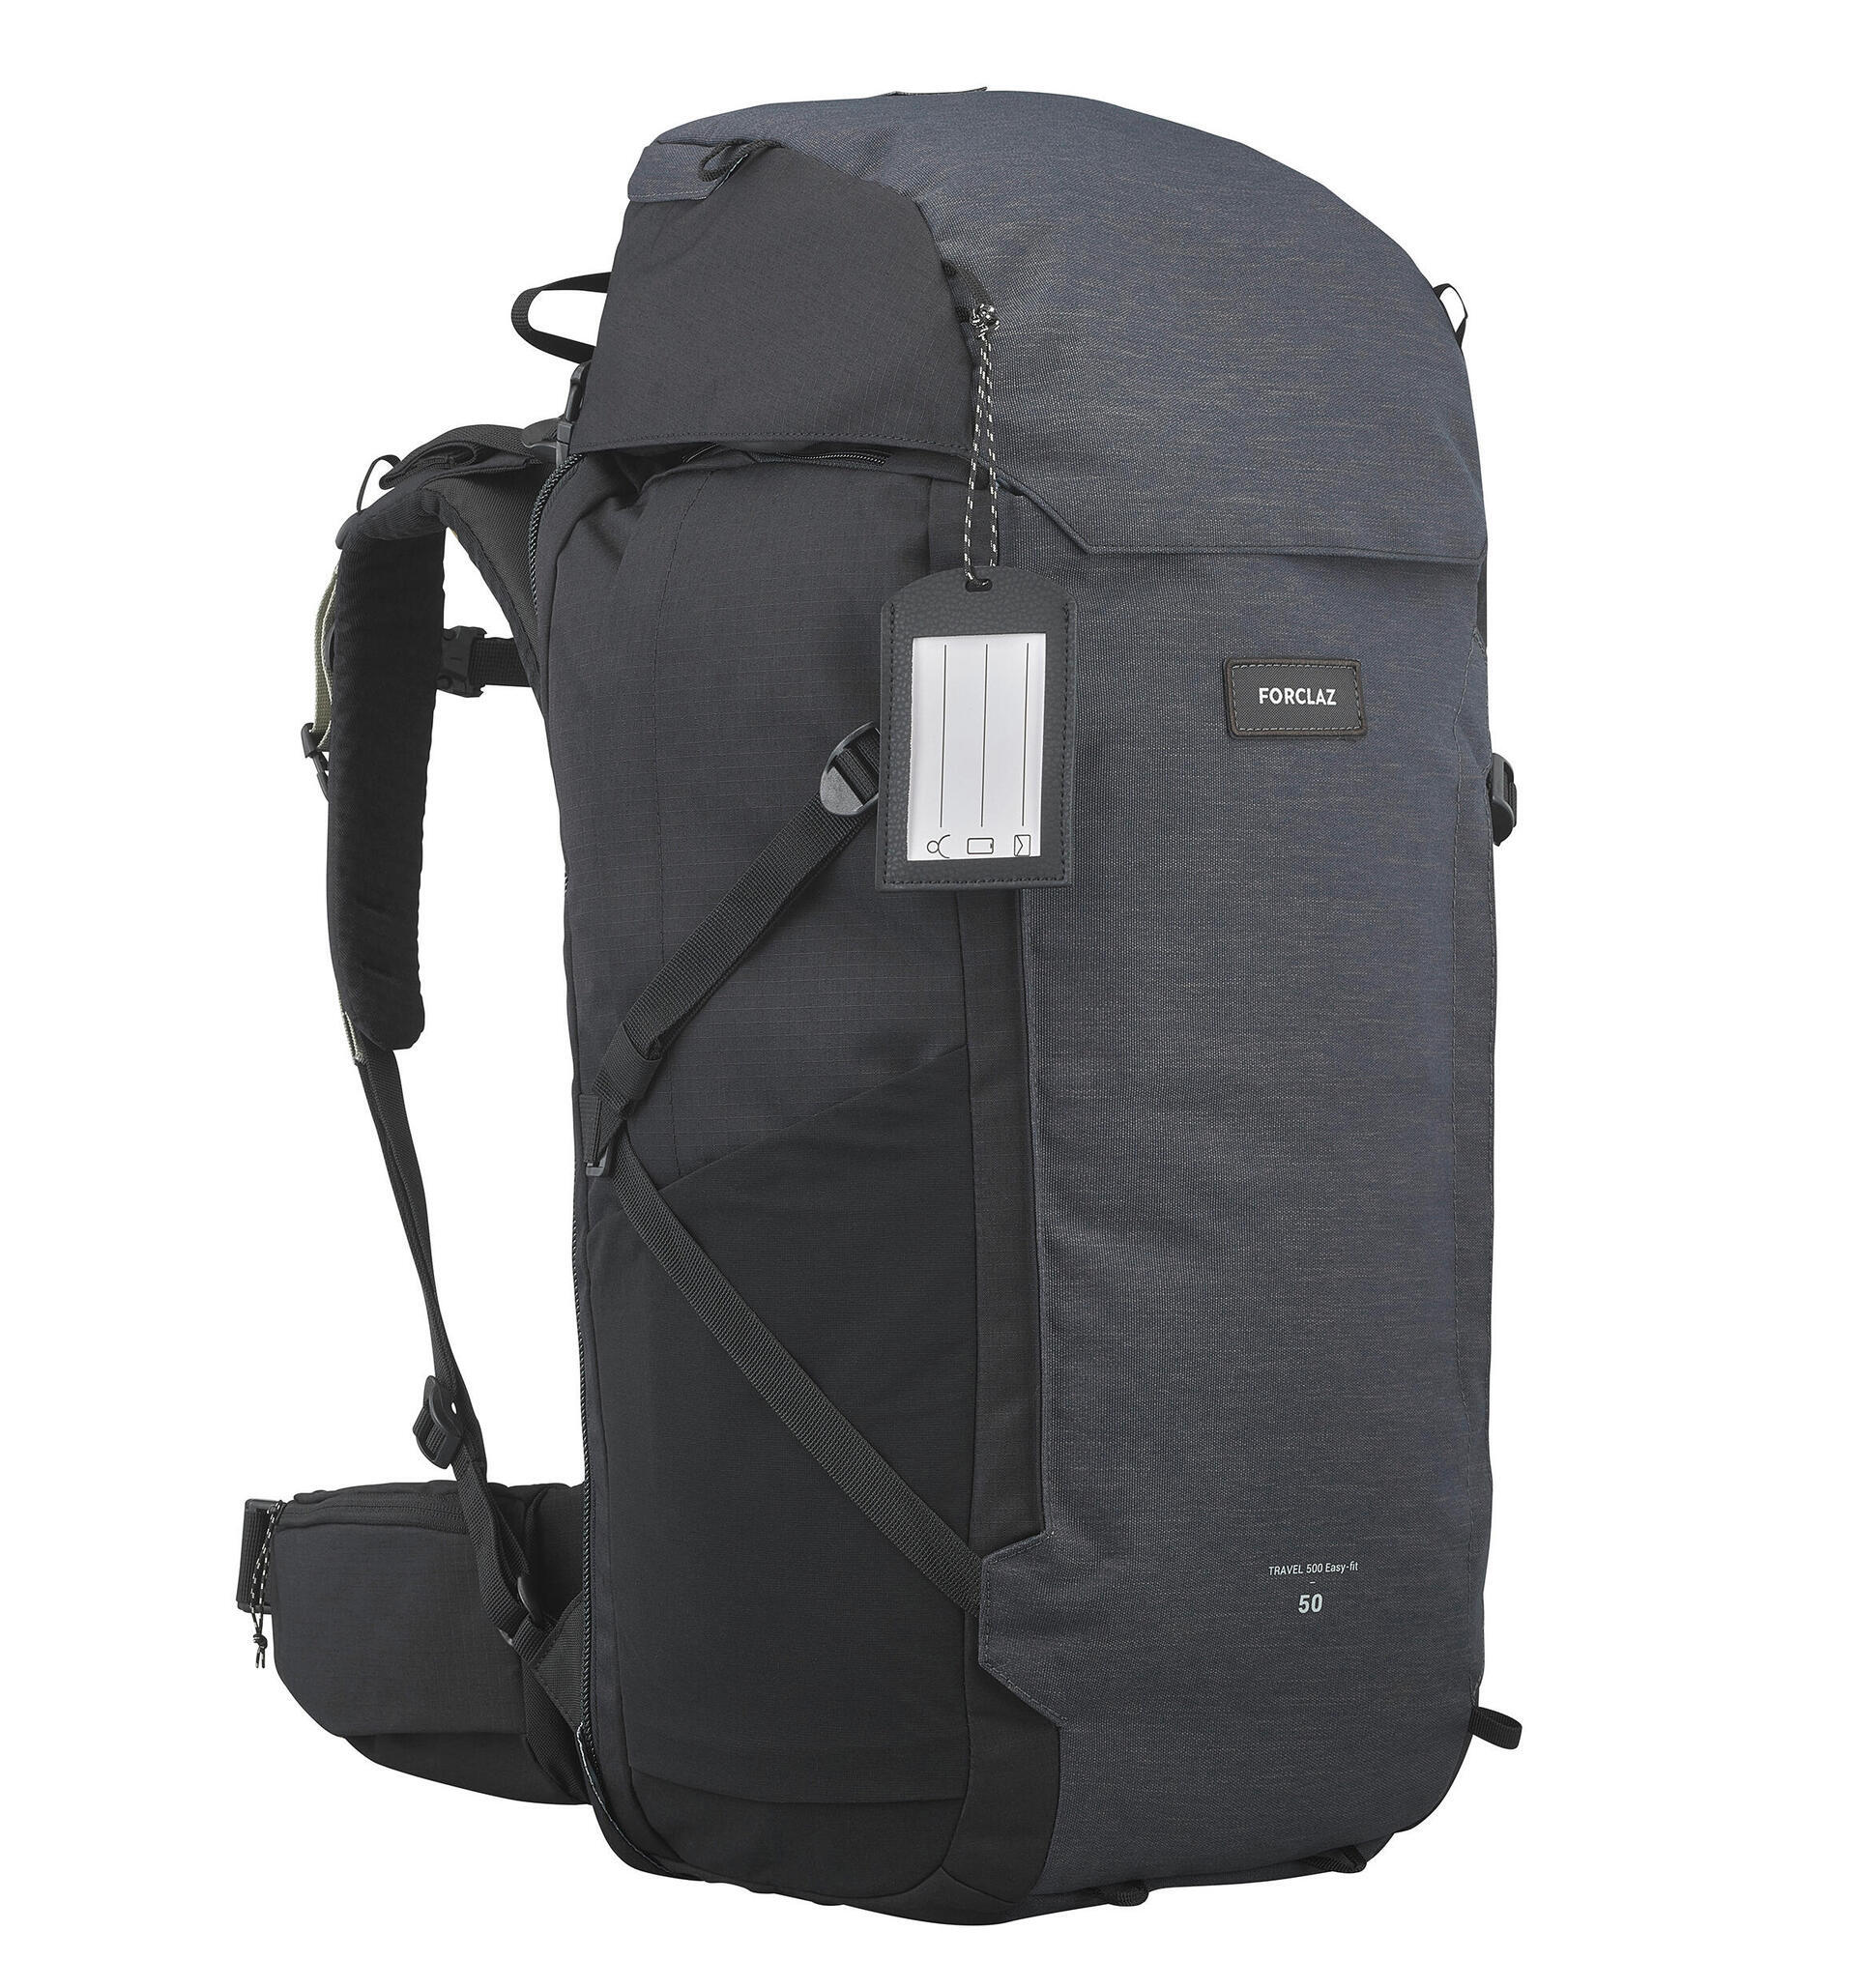 Women's Travel Backpack 50 L - Travel 500